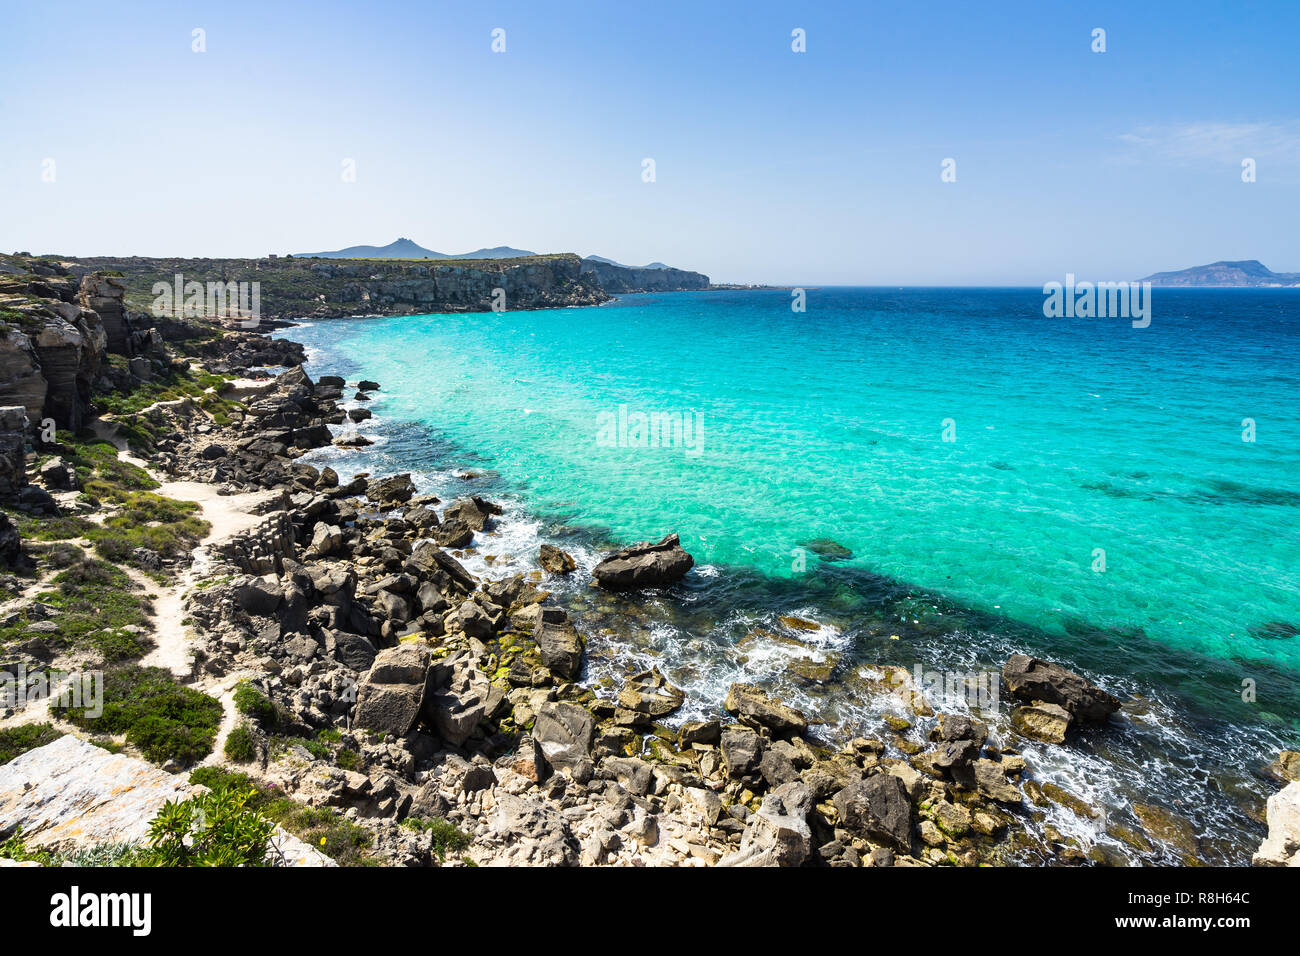 Belle ensoleillée de paysage marin de la baie de Cala Rossa à Favignana célèbre pour ses eaux cristallines, Îles Égades, Sicile, Italie Banque D'Images